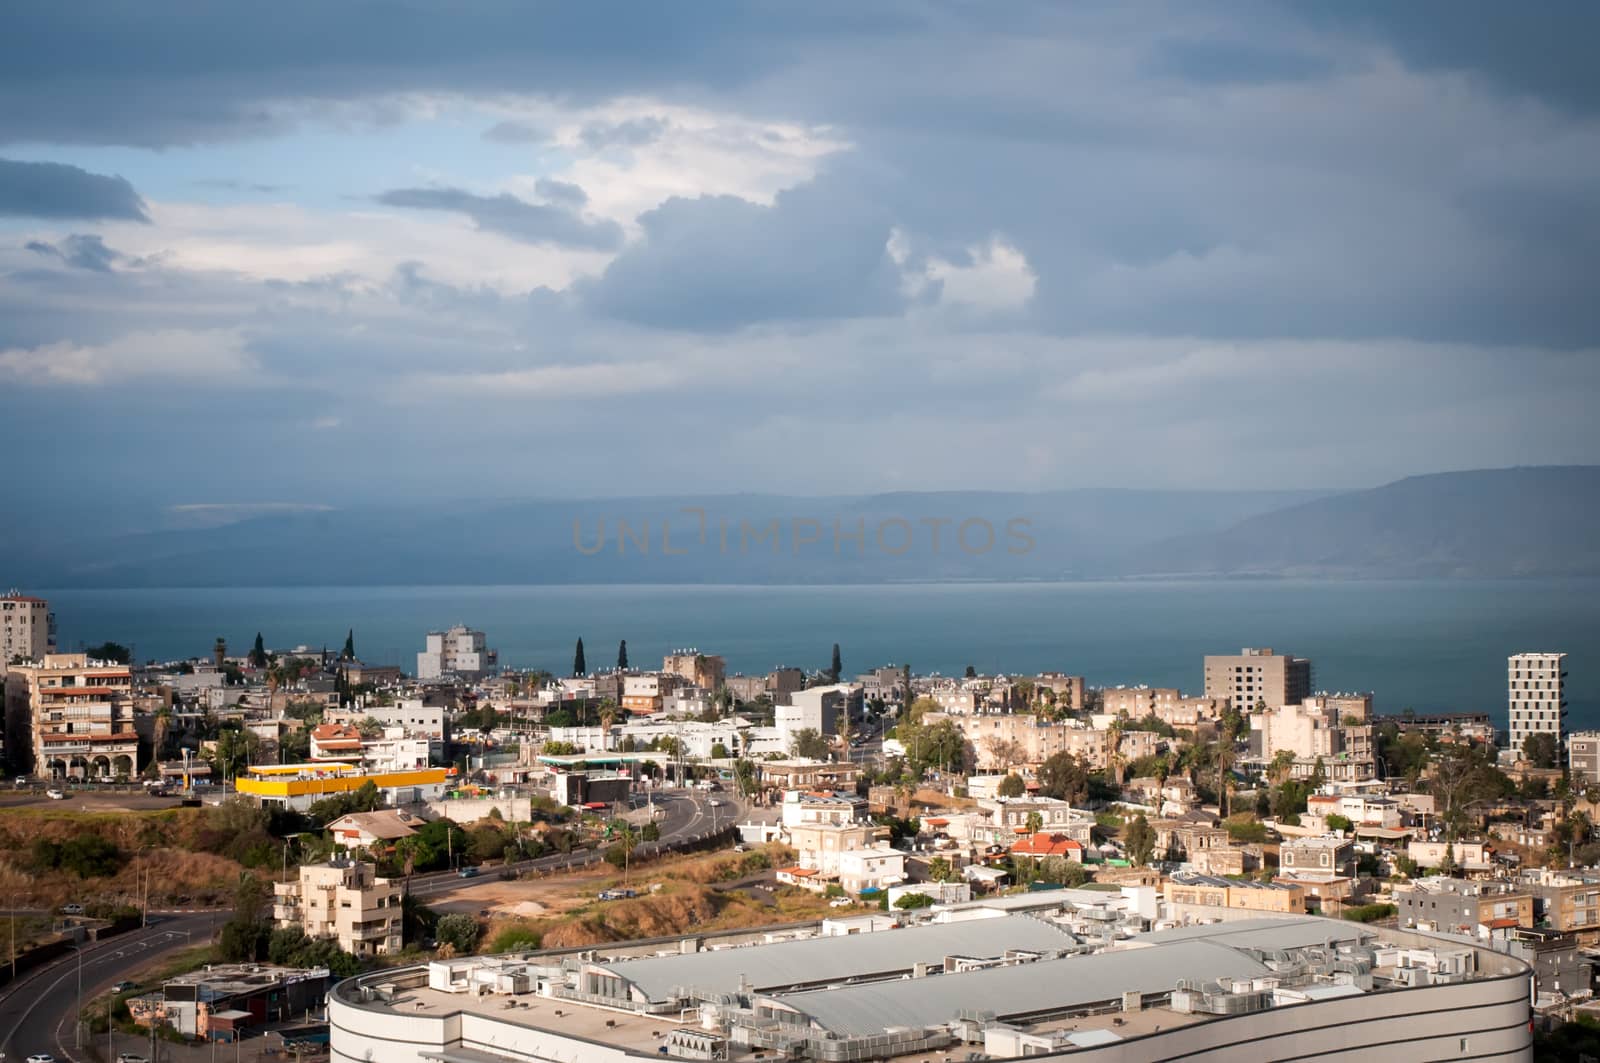 Top view of the residential neighborhoods of Tiberias , Israel .